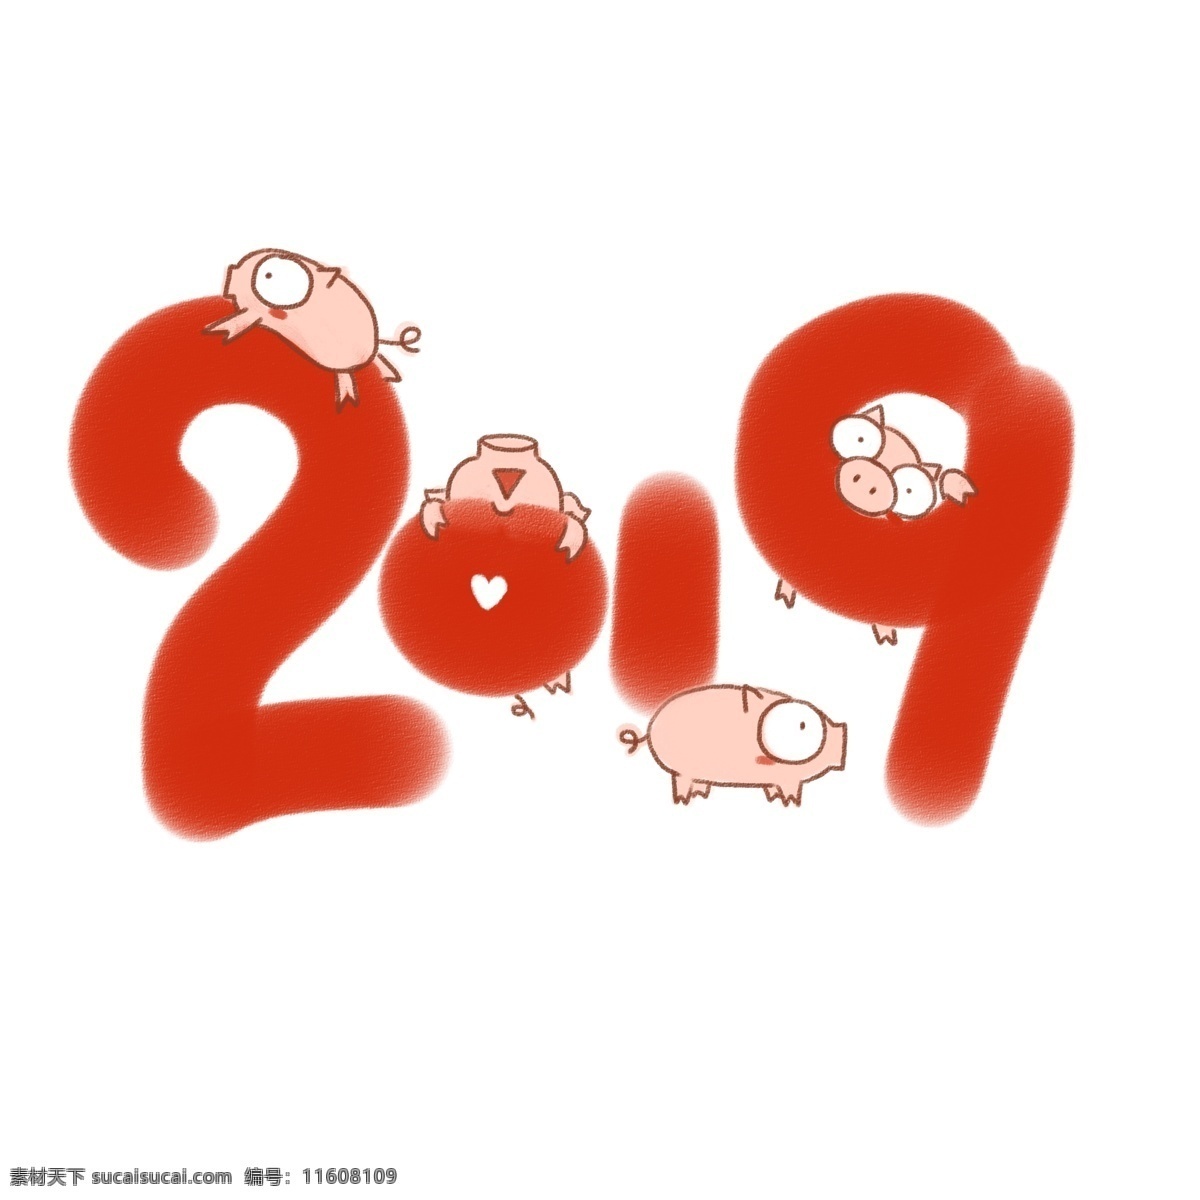 2019 年 小 猪 手绘 插图 插画 红色 可爱 小猪 生肖 新年 免抠 粉色 呆 萌